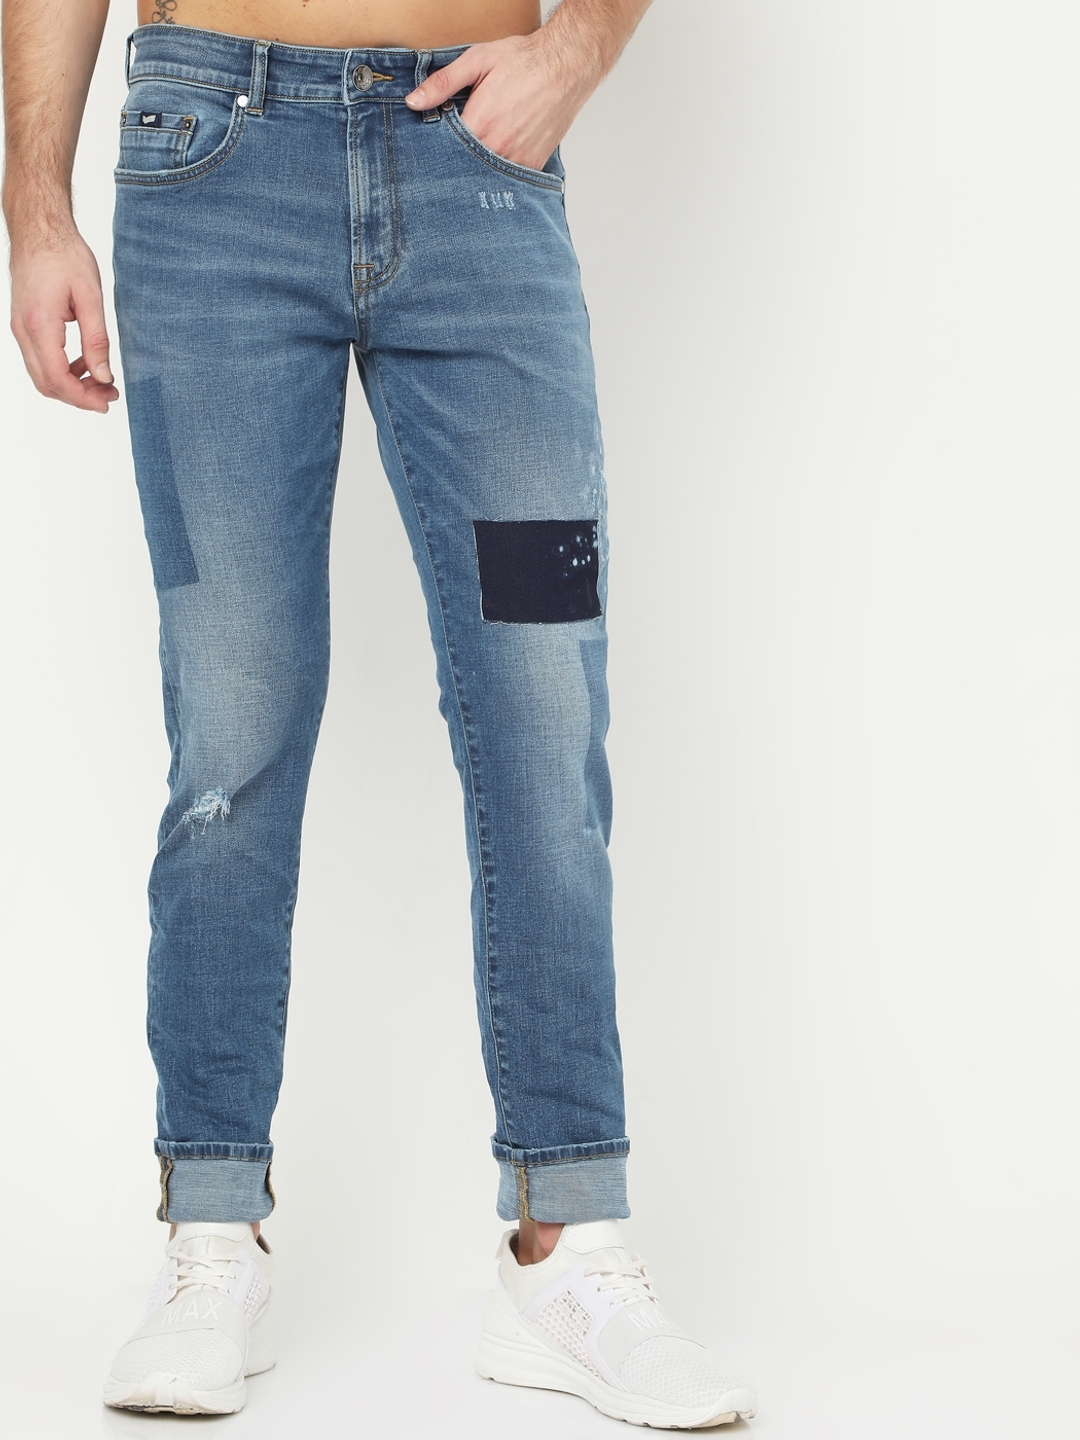 Shop Plain Carrot Fit Jeans Online | Max Kuwait